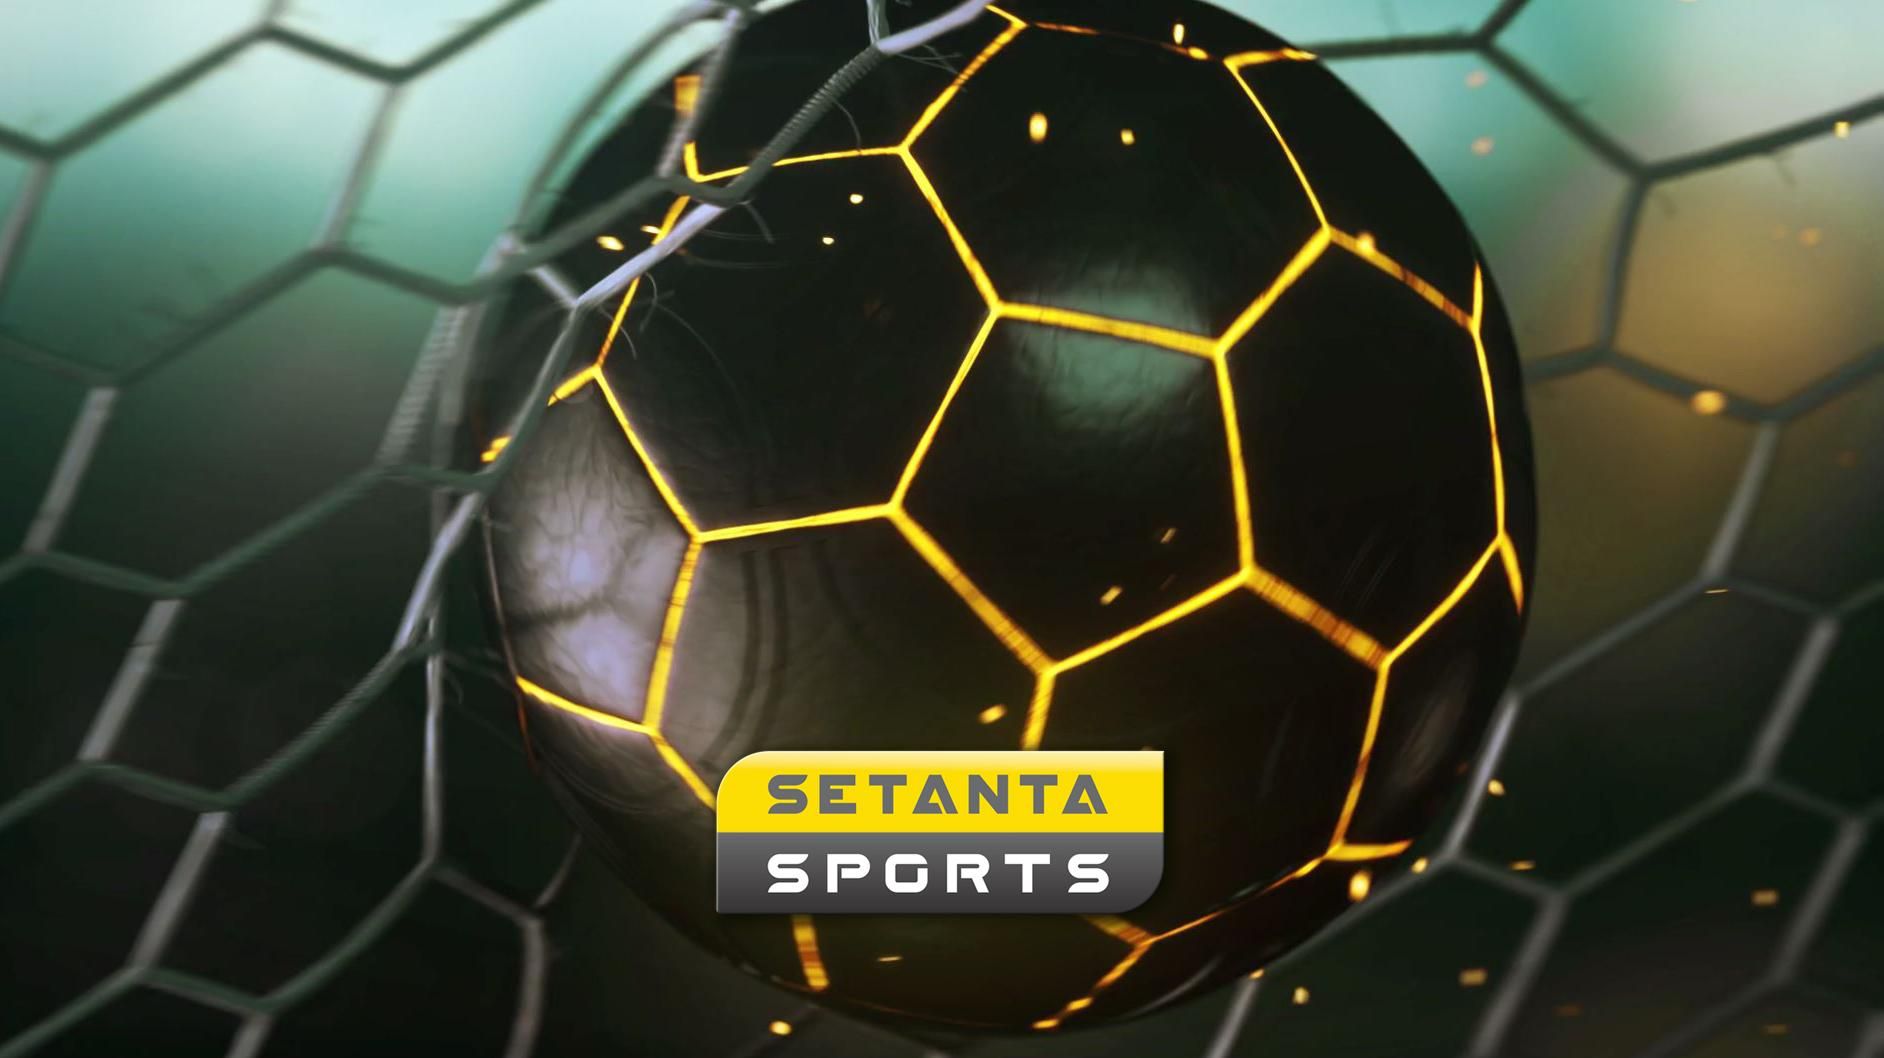 Setanta официально запускает в Украине еще один спортивный канал: что об этом известно